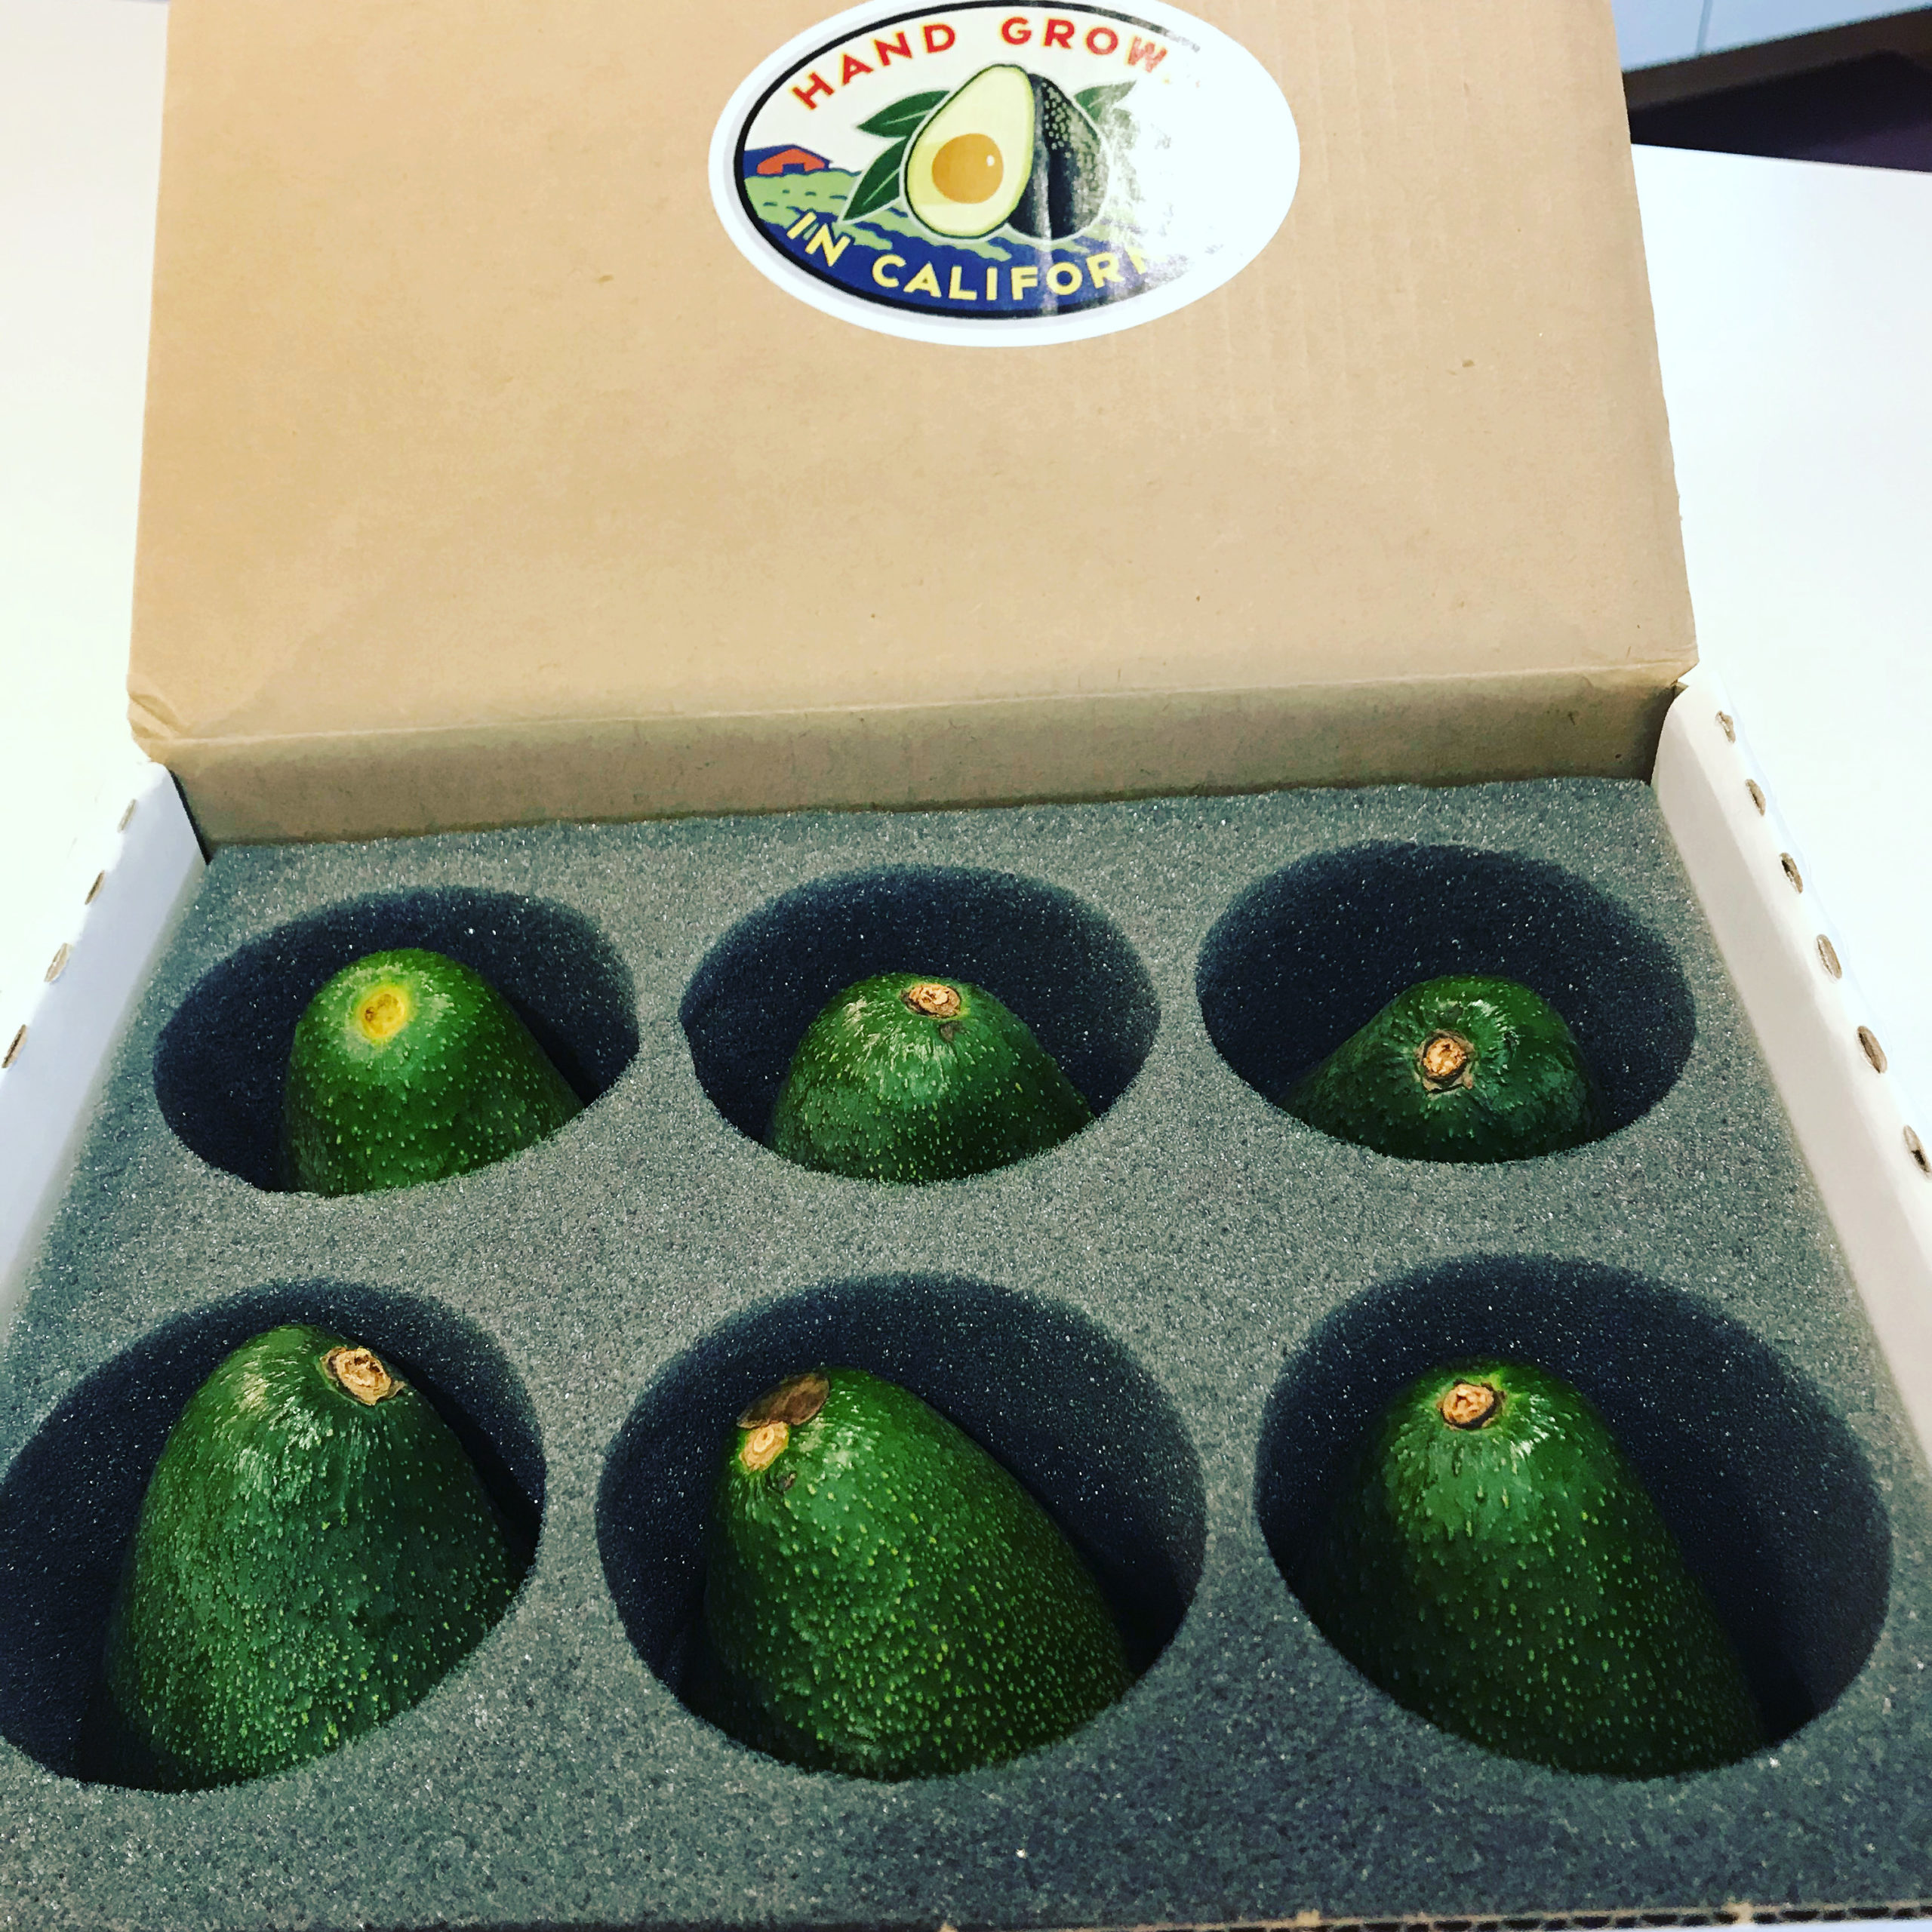 California avocado gift box